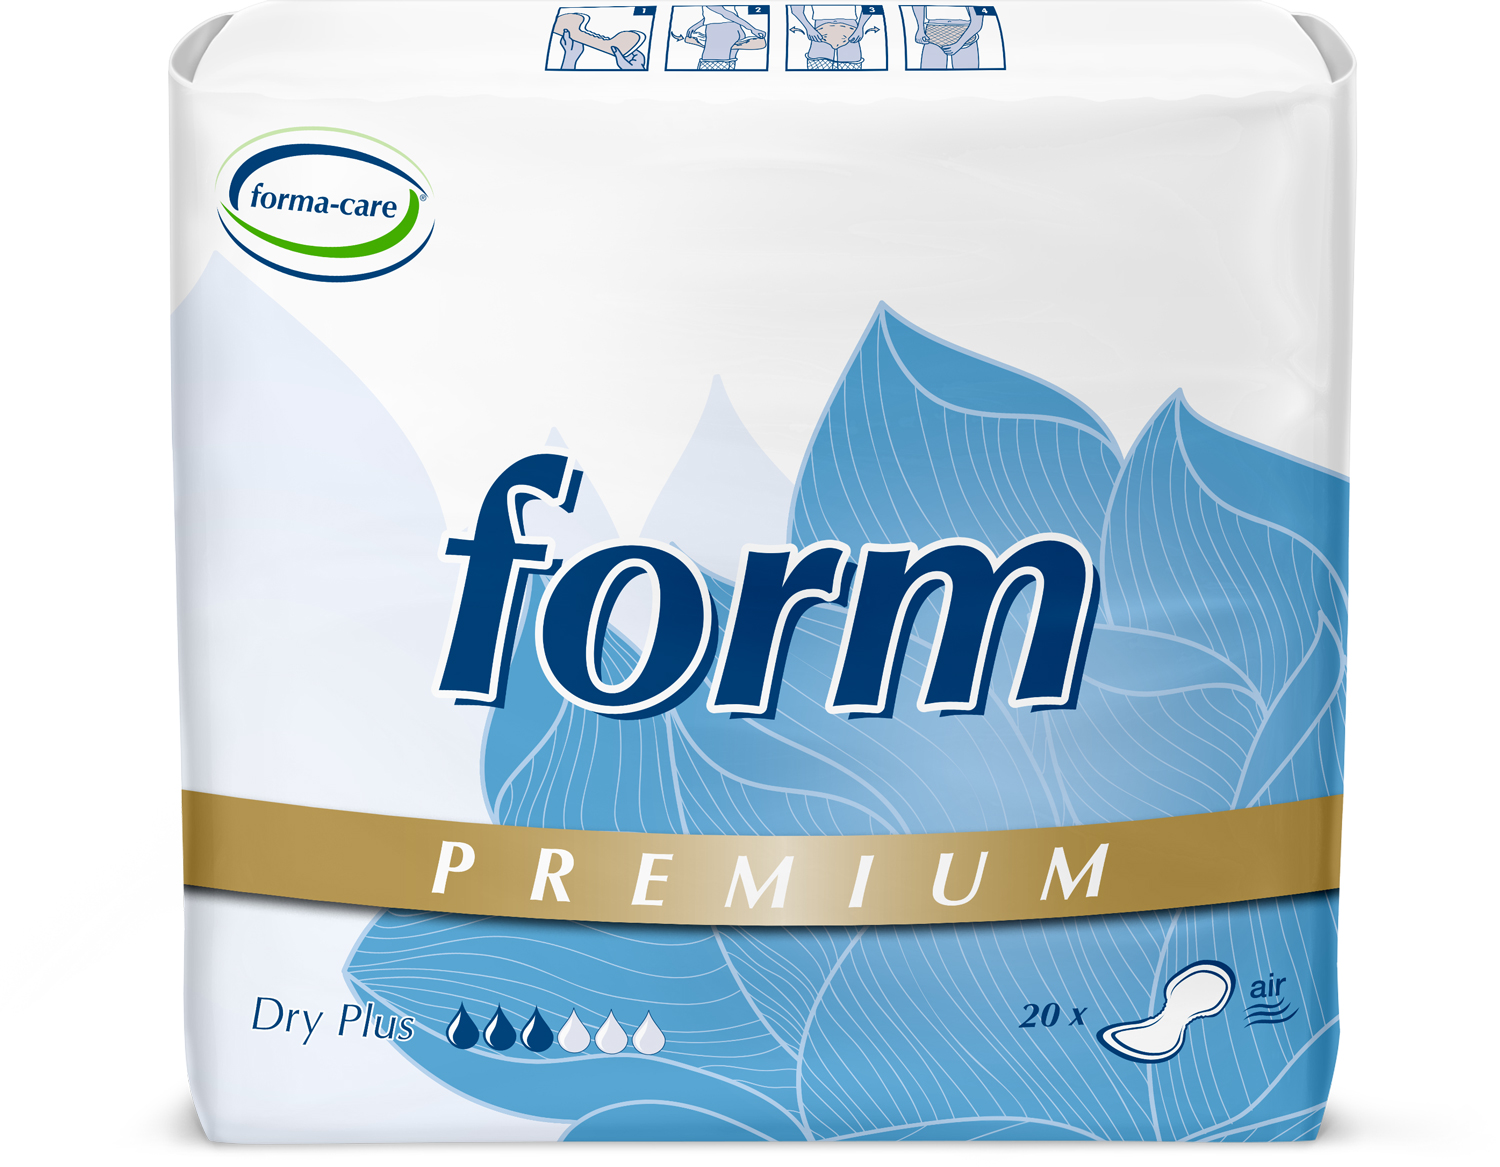 Abbildung eines Beutels der Premium-Vorlage forma-care premium dry, Saugstärke plus